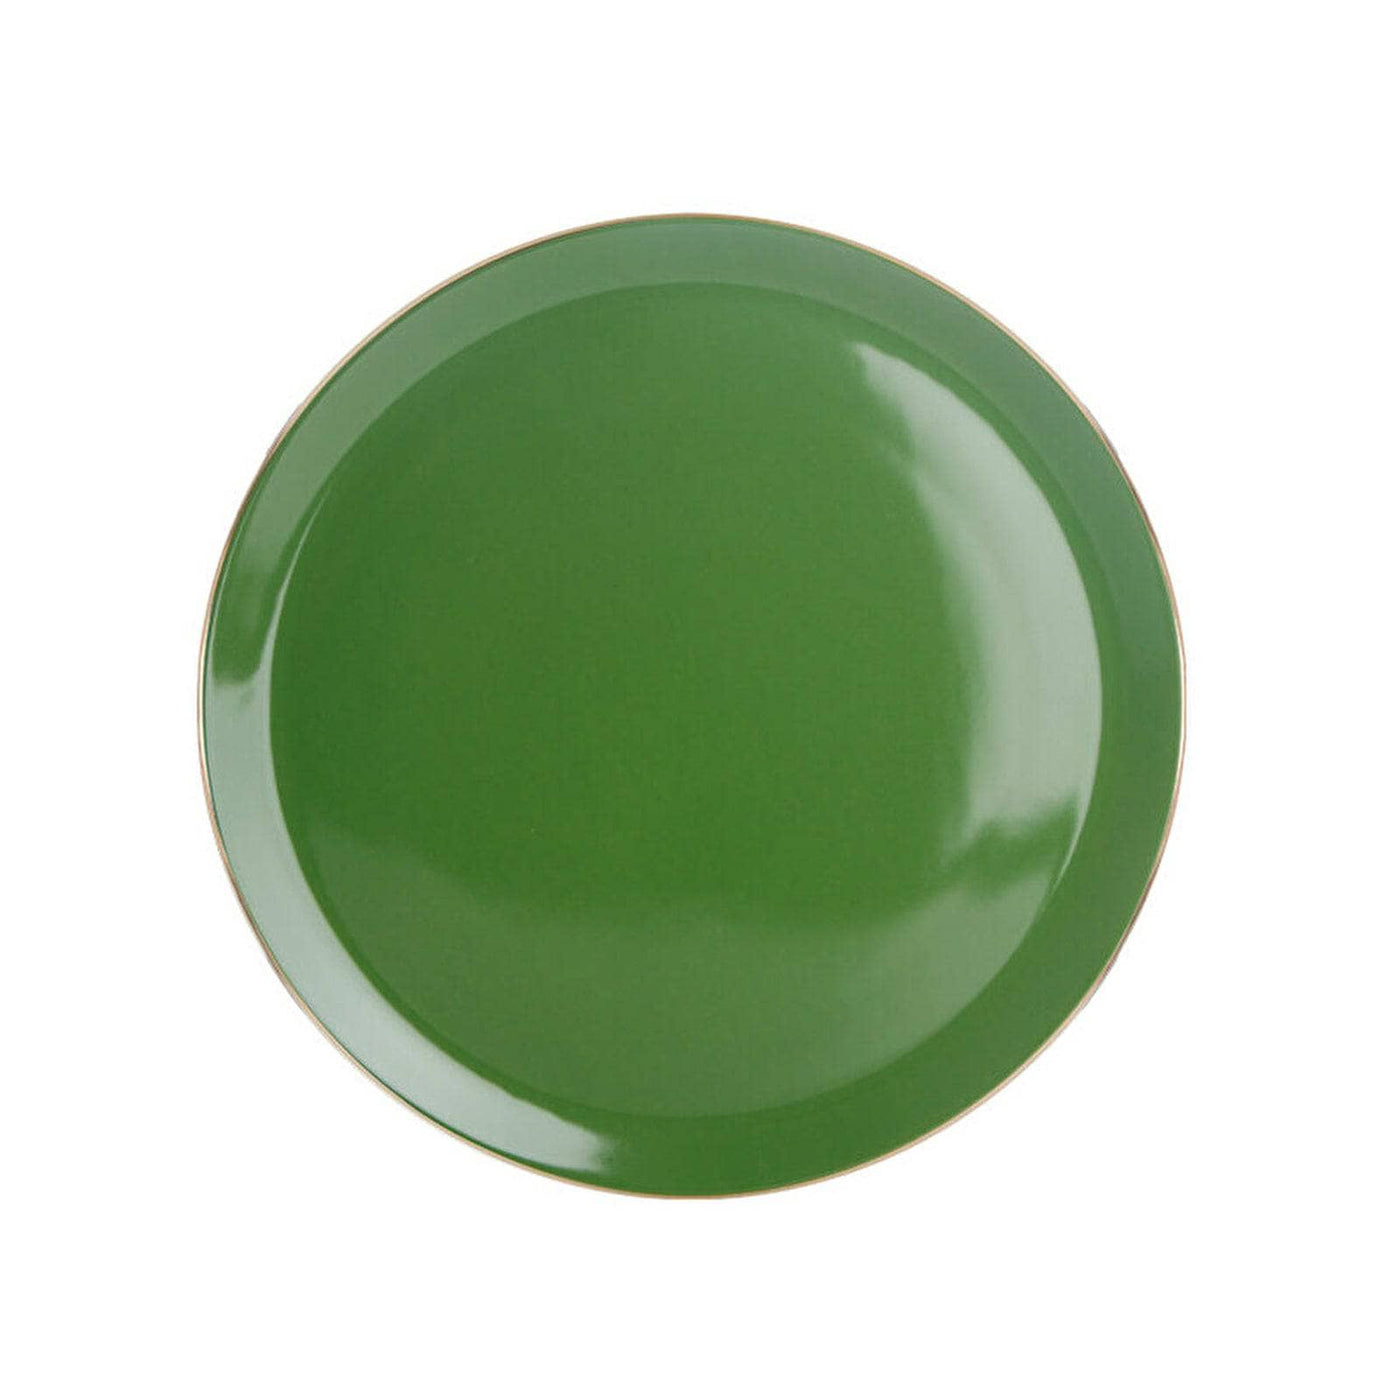 Morocco Flat Plate, Green, 32 cm Plates sazy.com